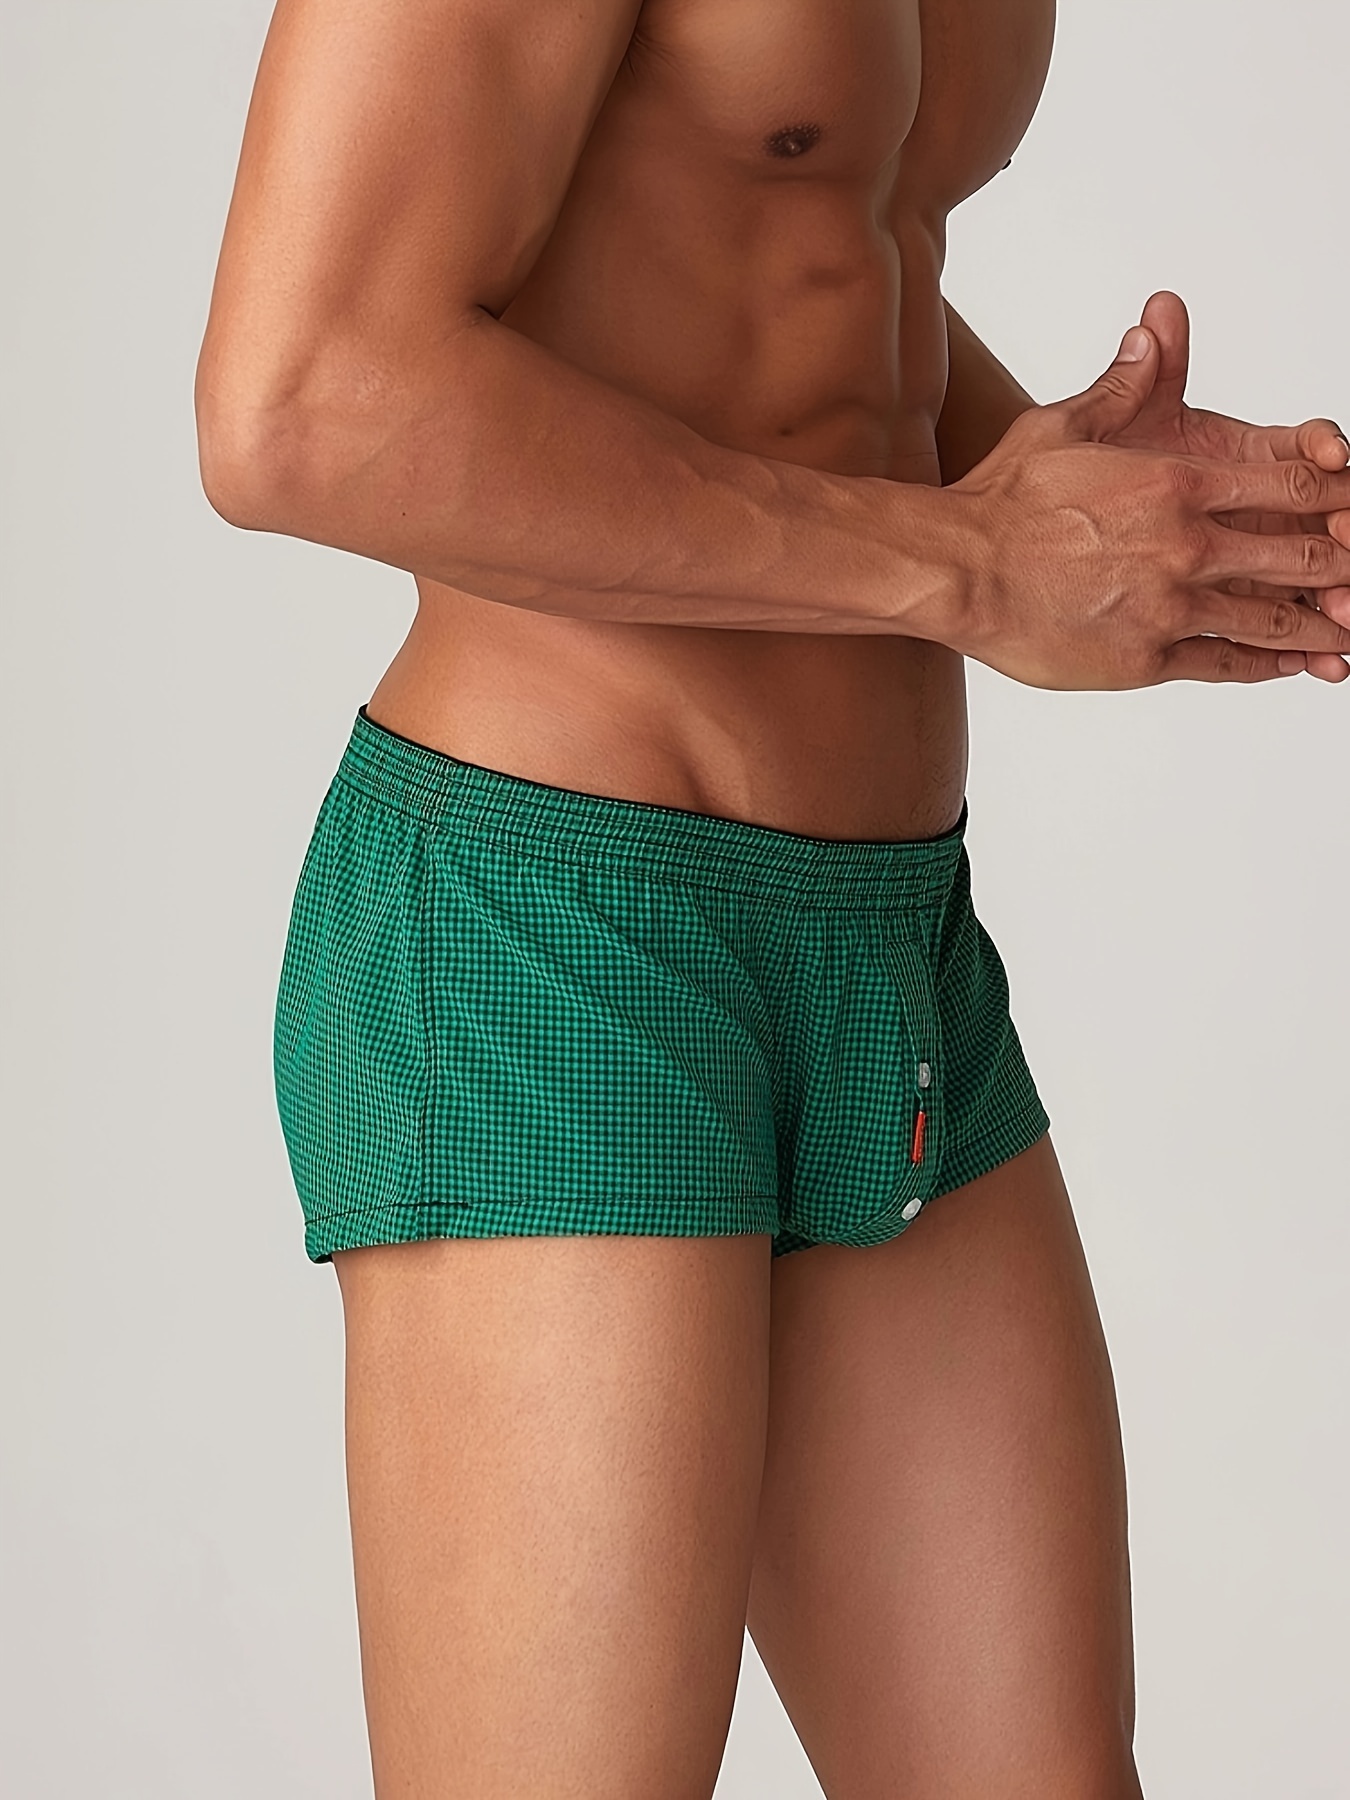 Men Sexy Briefs Underwear Low-Rise Plaid Pajama Trunk Pouch Underpants  Lingerie